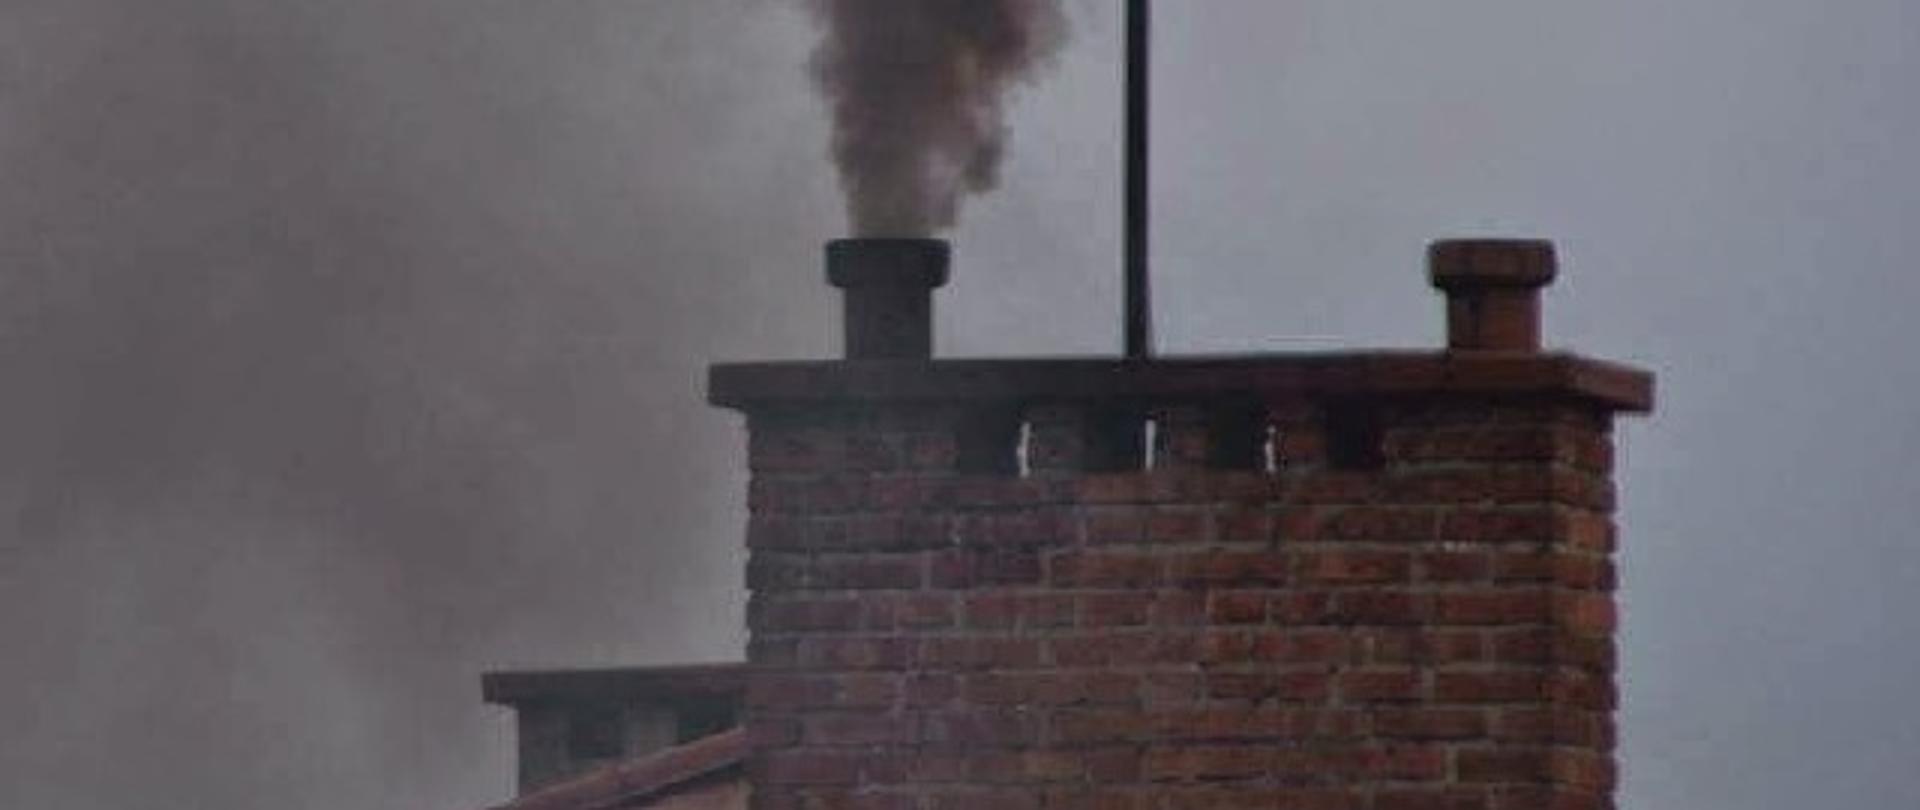 komin z którego wydobywa się czarny dym